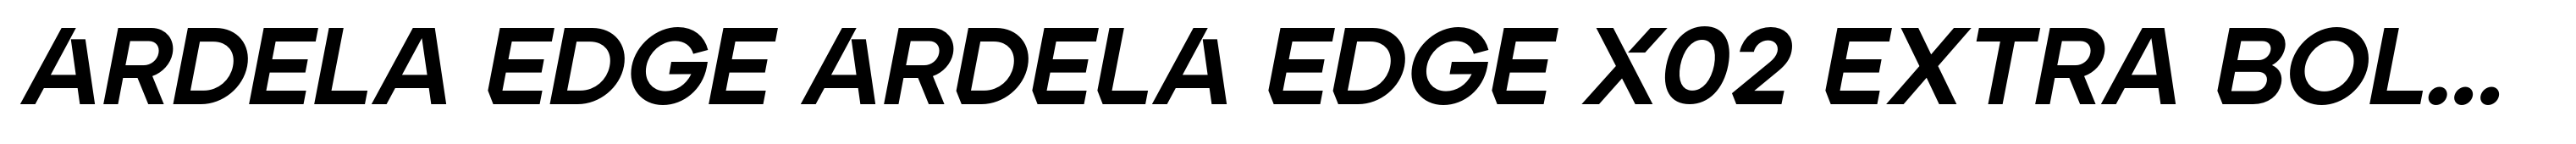 Ardela Edge ARDELA EDGE X02 Extra Bold Italic